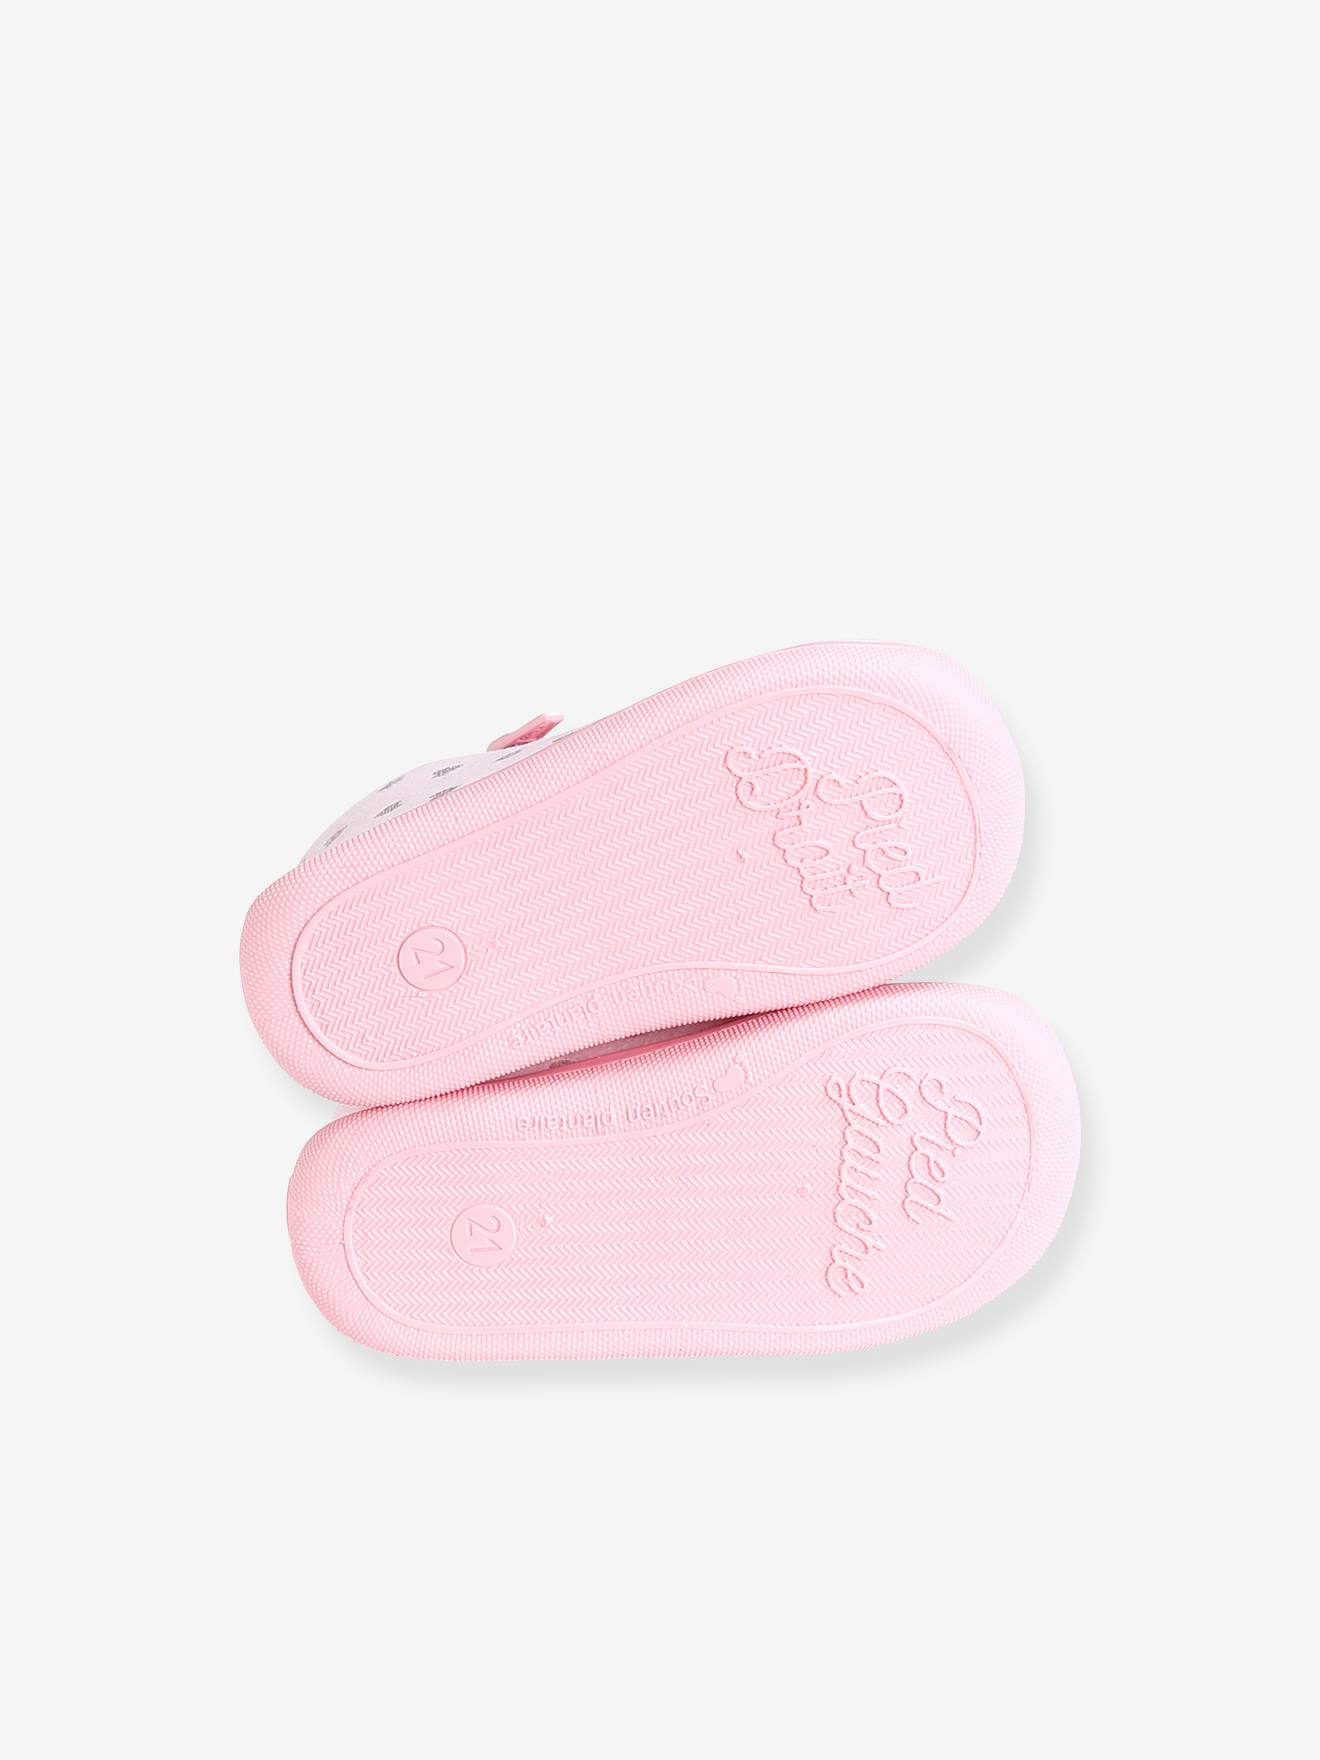 Chaussons zippés bébé fille fabriqués en France - rose imprimé, Chaussures